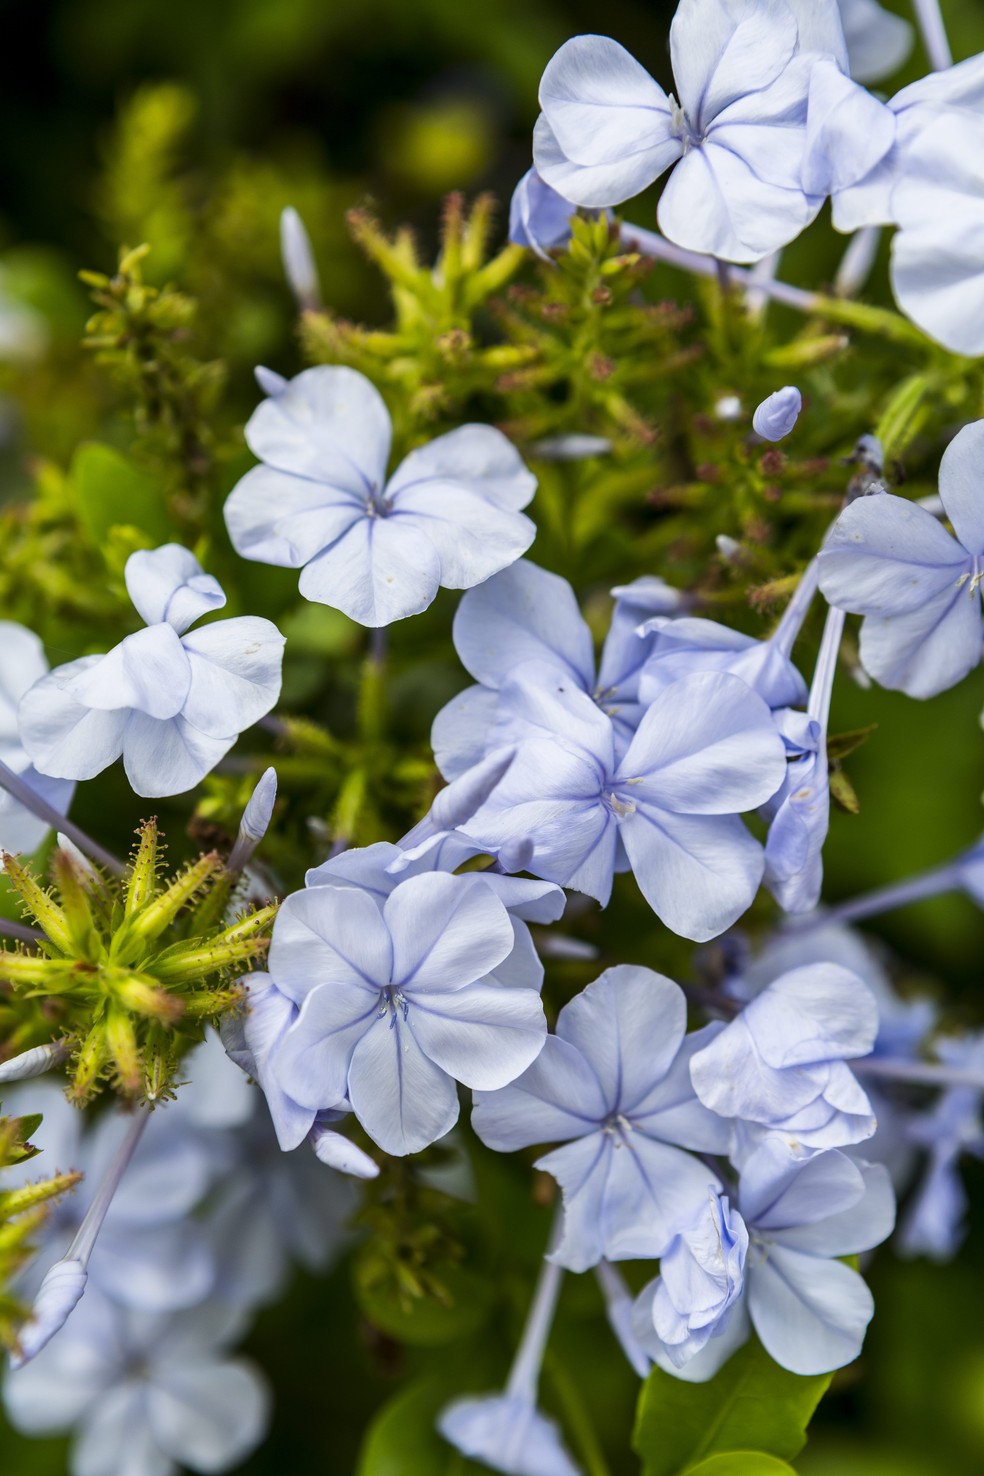 A bela-emília apresenta delicadas flores azuis, muito usadas para compor arbustos em jardins de estilo romântico — Foto: Edu Castello / Editora Globo